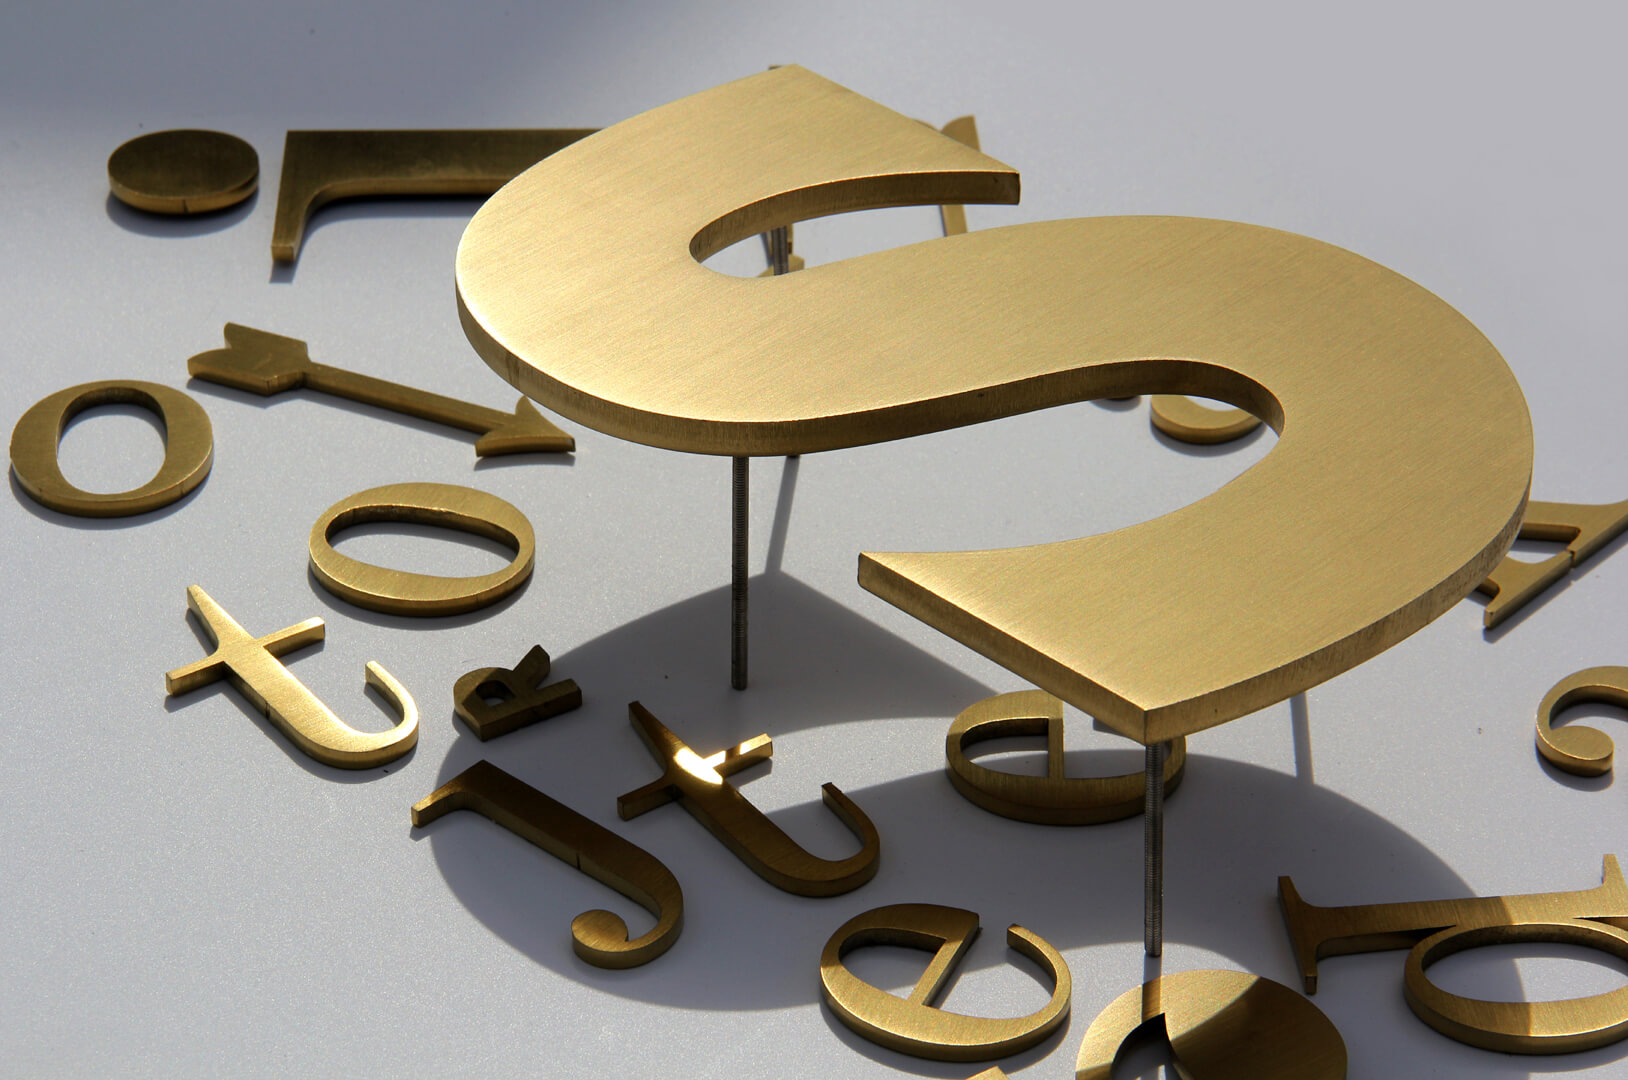 Letras doradas - Letras metálicas en dorado, estilo industrial.